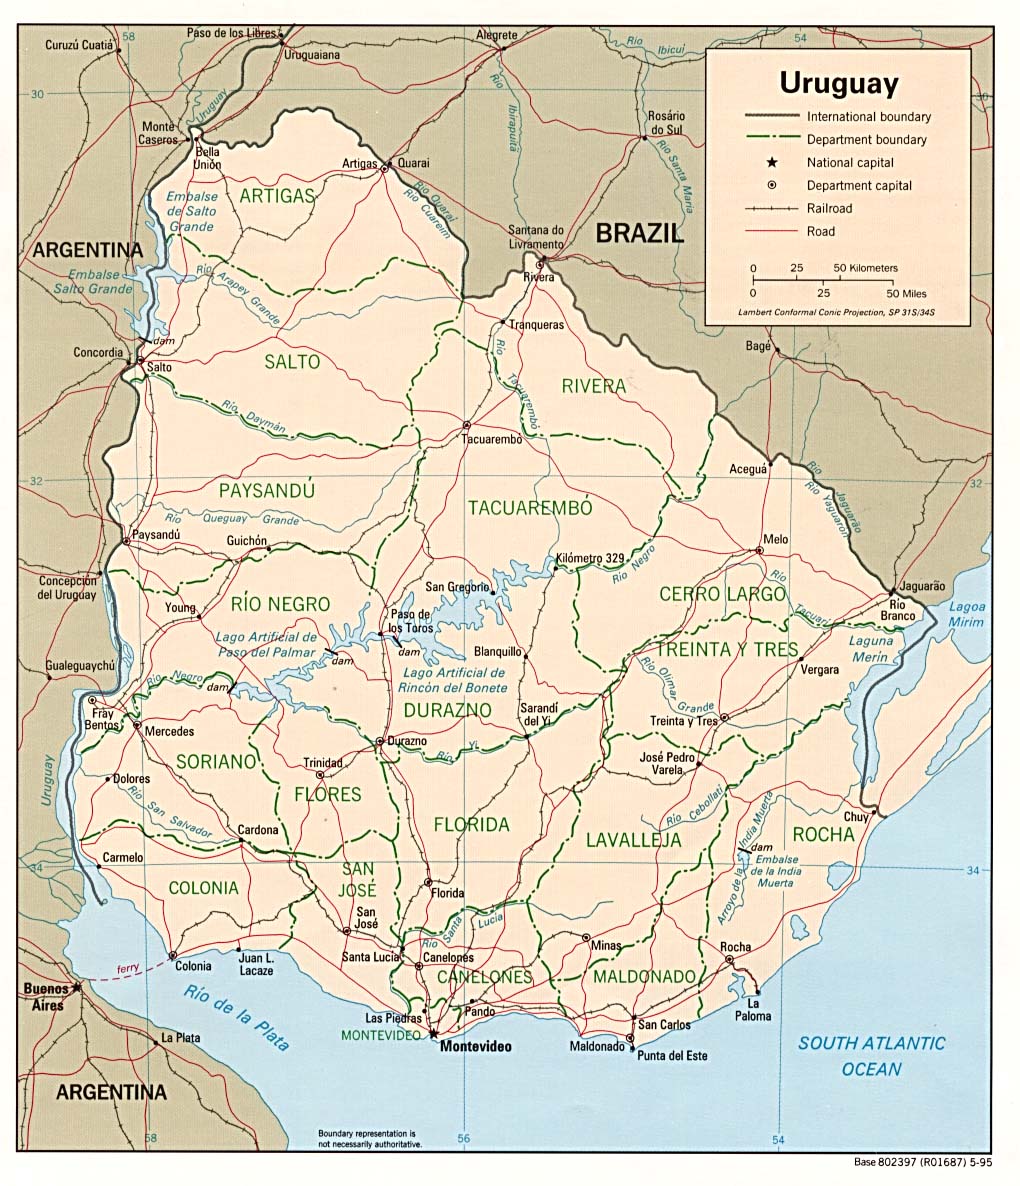 Mapa Político de Uruguay - mapa.owje.com